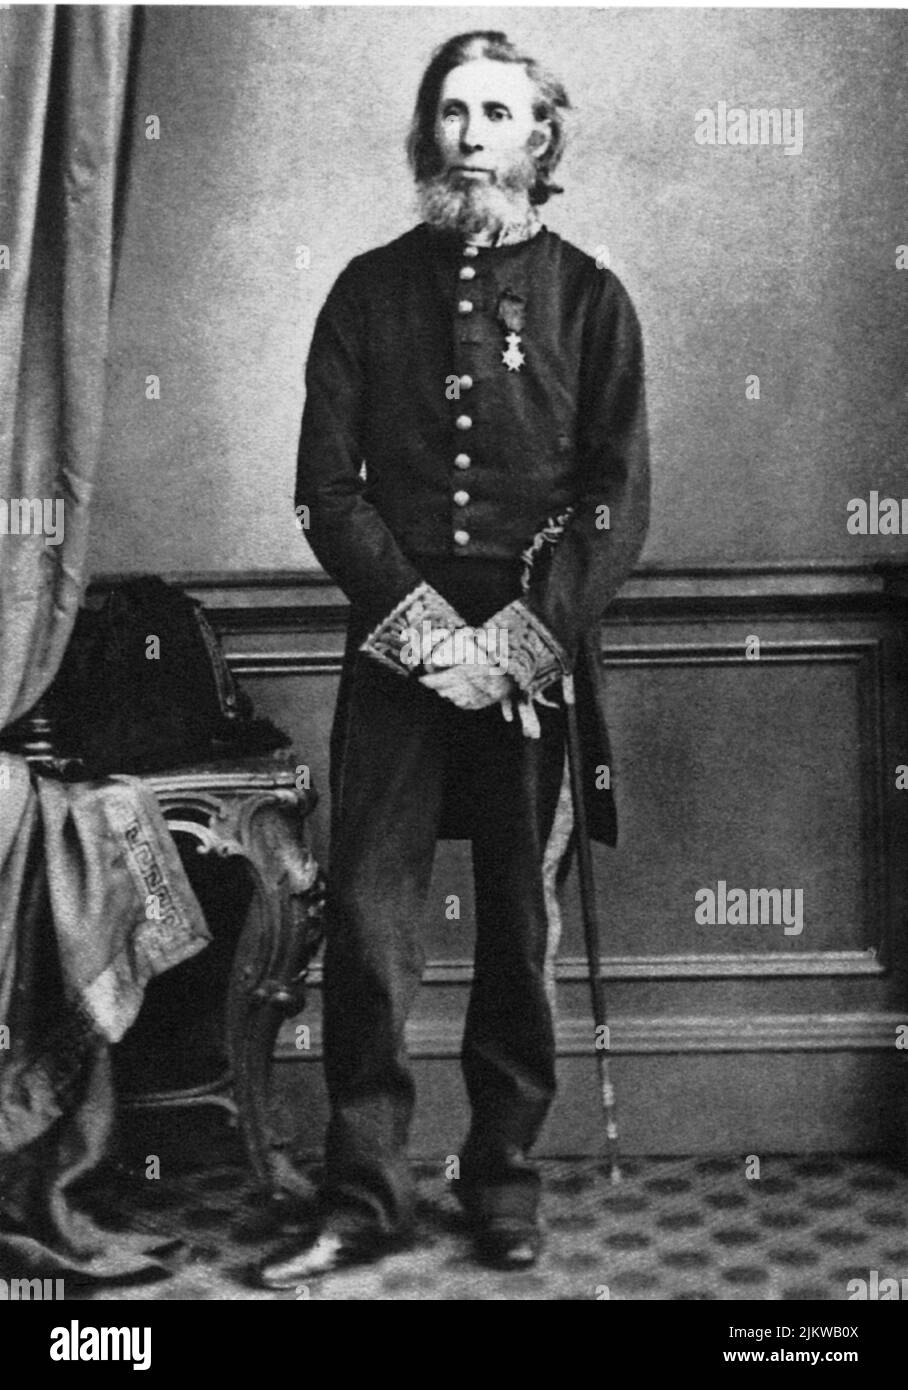 1862 , Dublín , Irlanda : Sir WILLIAM WILDE , cirujano-oculista-en-ordinario de Su Majestad con el uniforme de Chevalier de la Orden Sueca de la Estrella del Norte , padre del célebre escritor y dramaturgo irlandés OSCAR WILDE ( 1854 - 1900 ) - SCRITTORE - LETTERATURA - LITERATURA - POETA - POETA - POESIA - DRAMMATURGO - ESCRITOR DE TEATRO - TEATRO - TEATRO - POESÍA ---- ARCHIVIO GBB Foto de stock